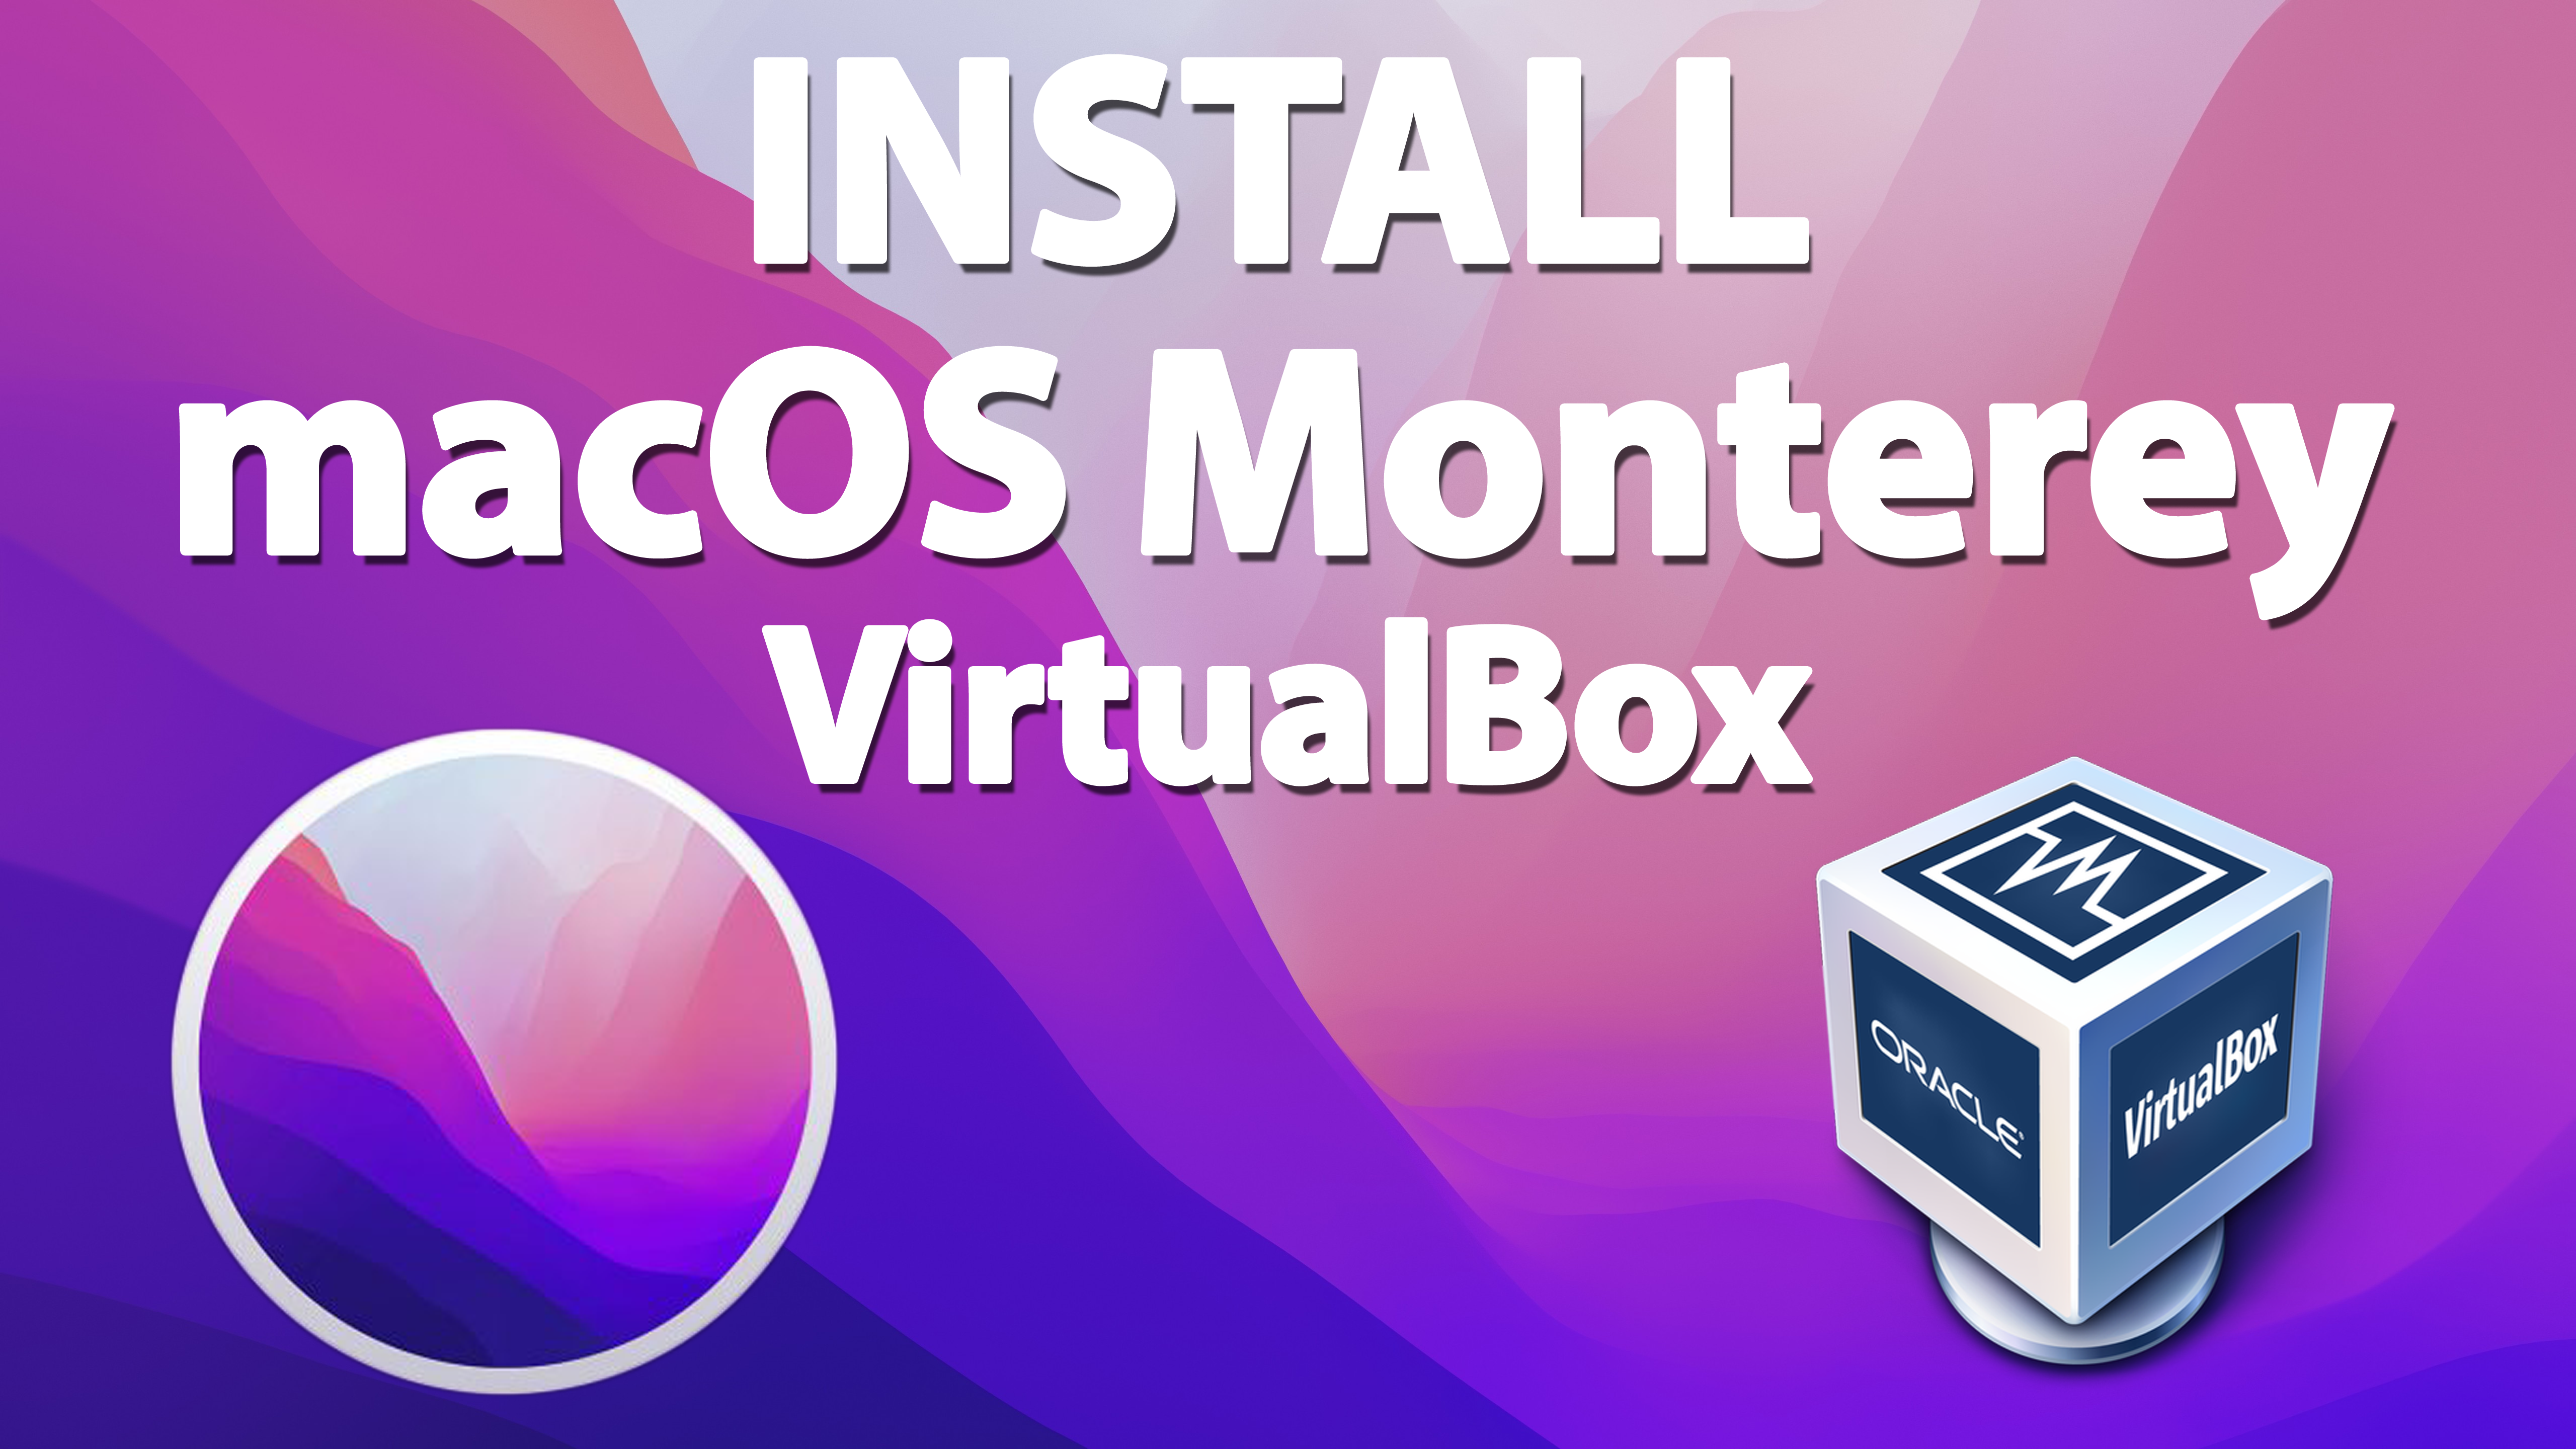 Установите macOS Monterey на VirtualBox на ПК с Windows